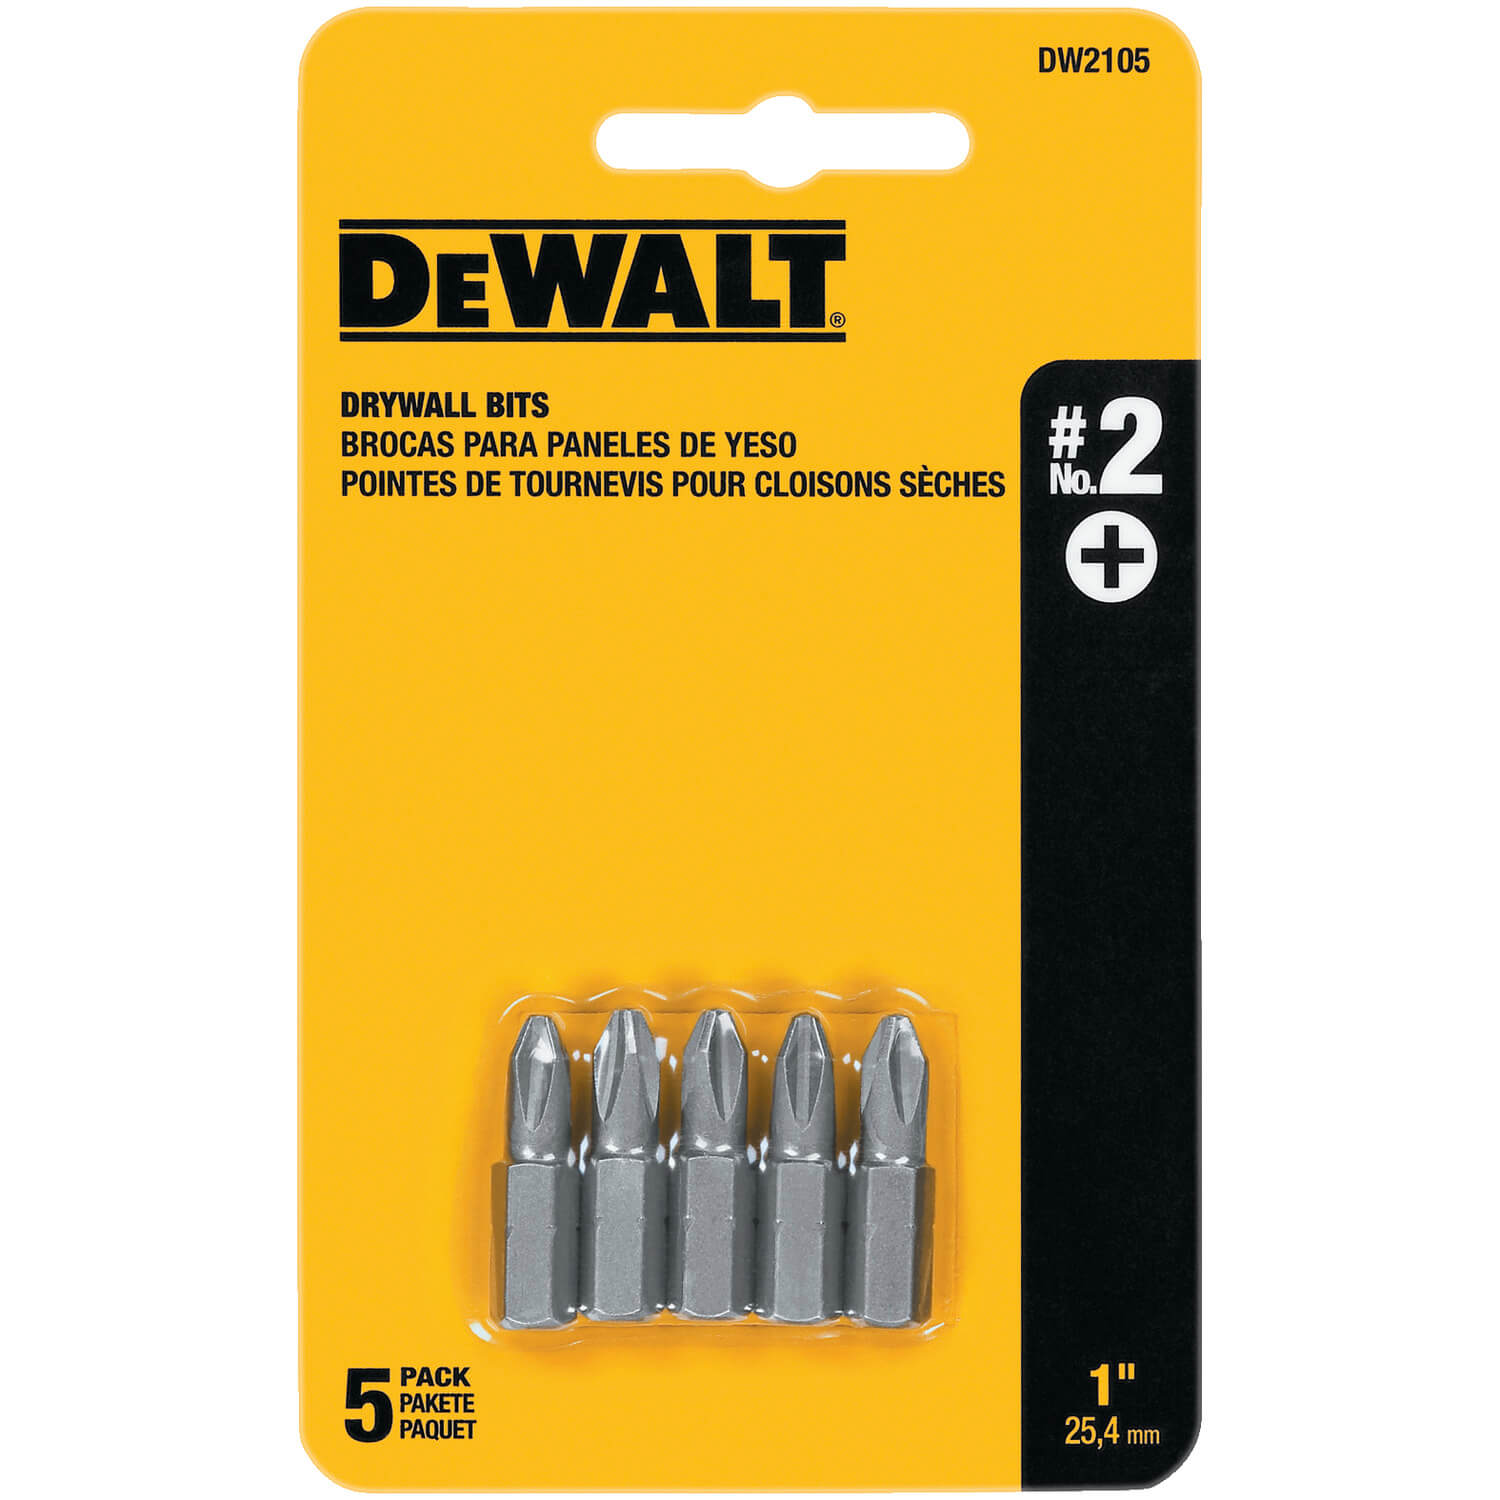 DEWALT DW2105 #2 Drywall Bit Tip (5-Pack) - wise-line-tools